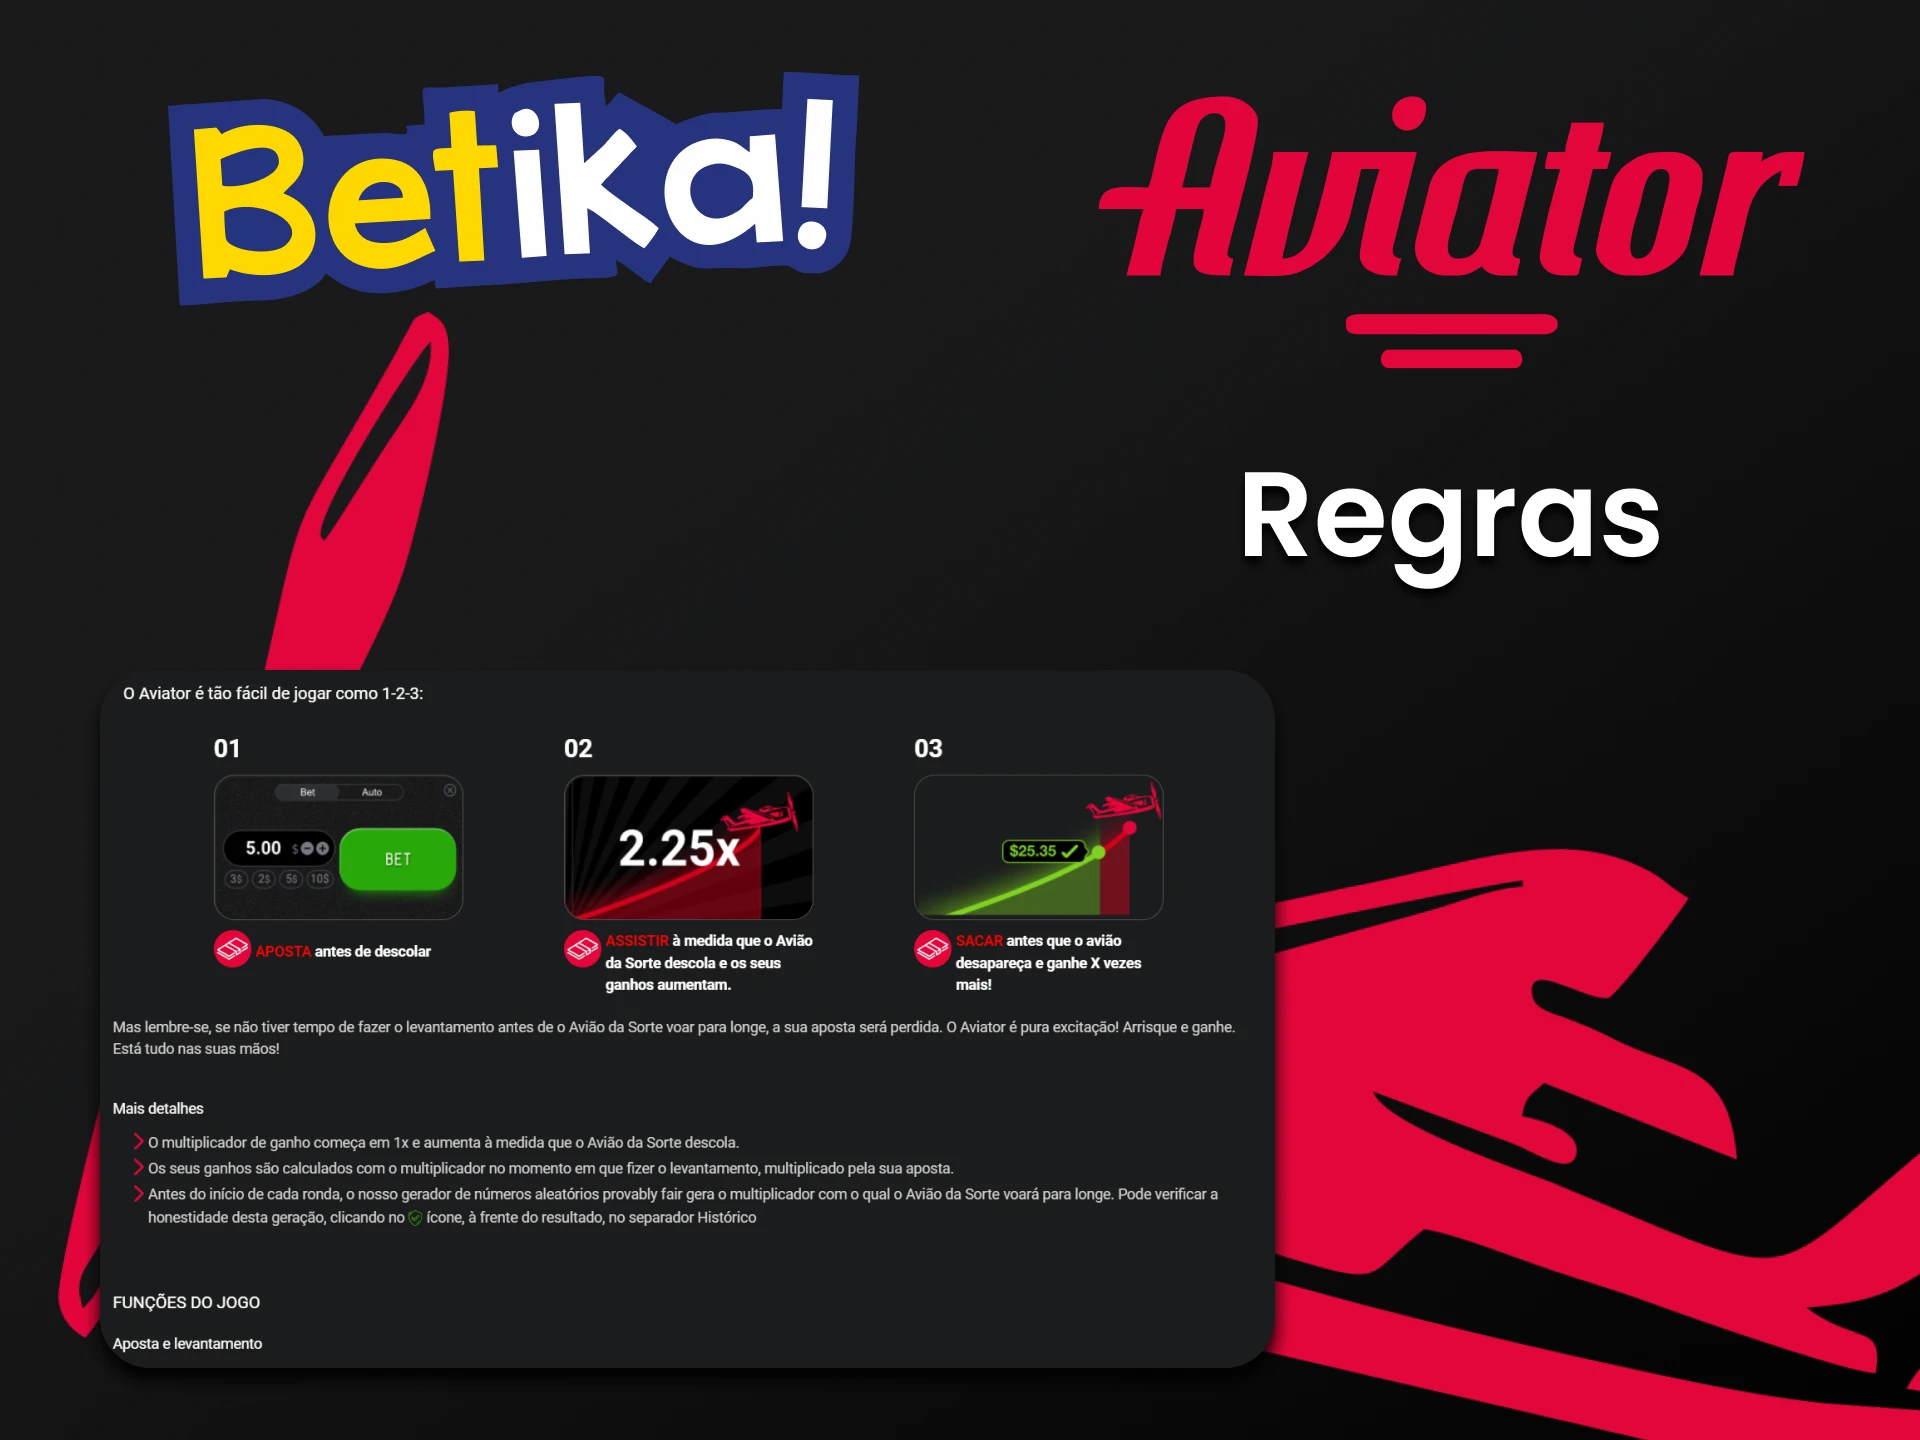 Conheça as regras do jogo Aviator no Betika.